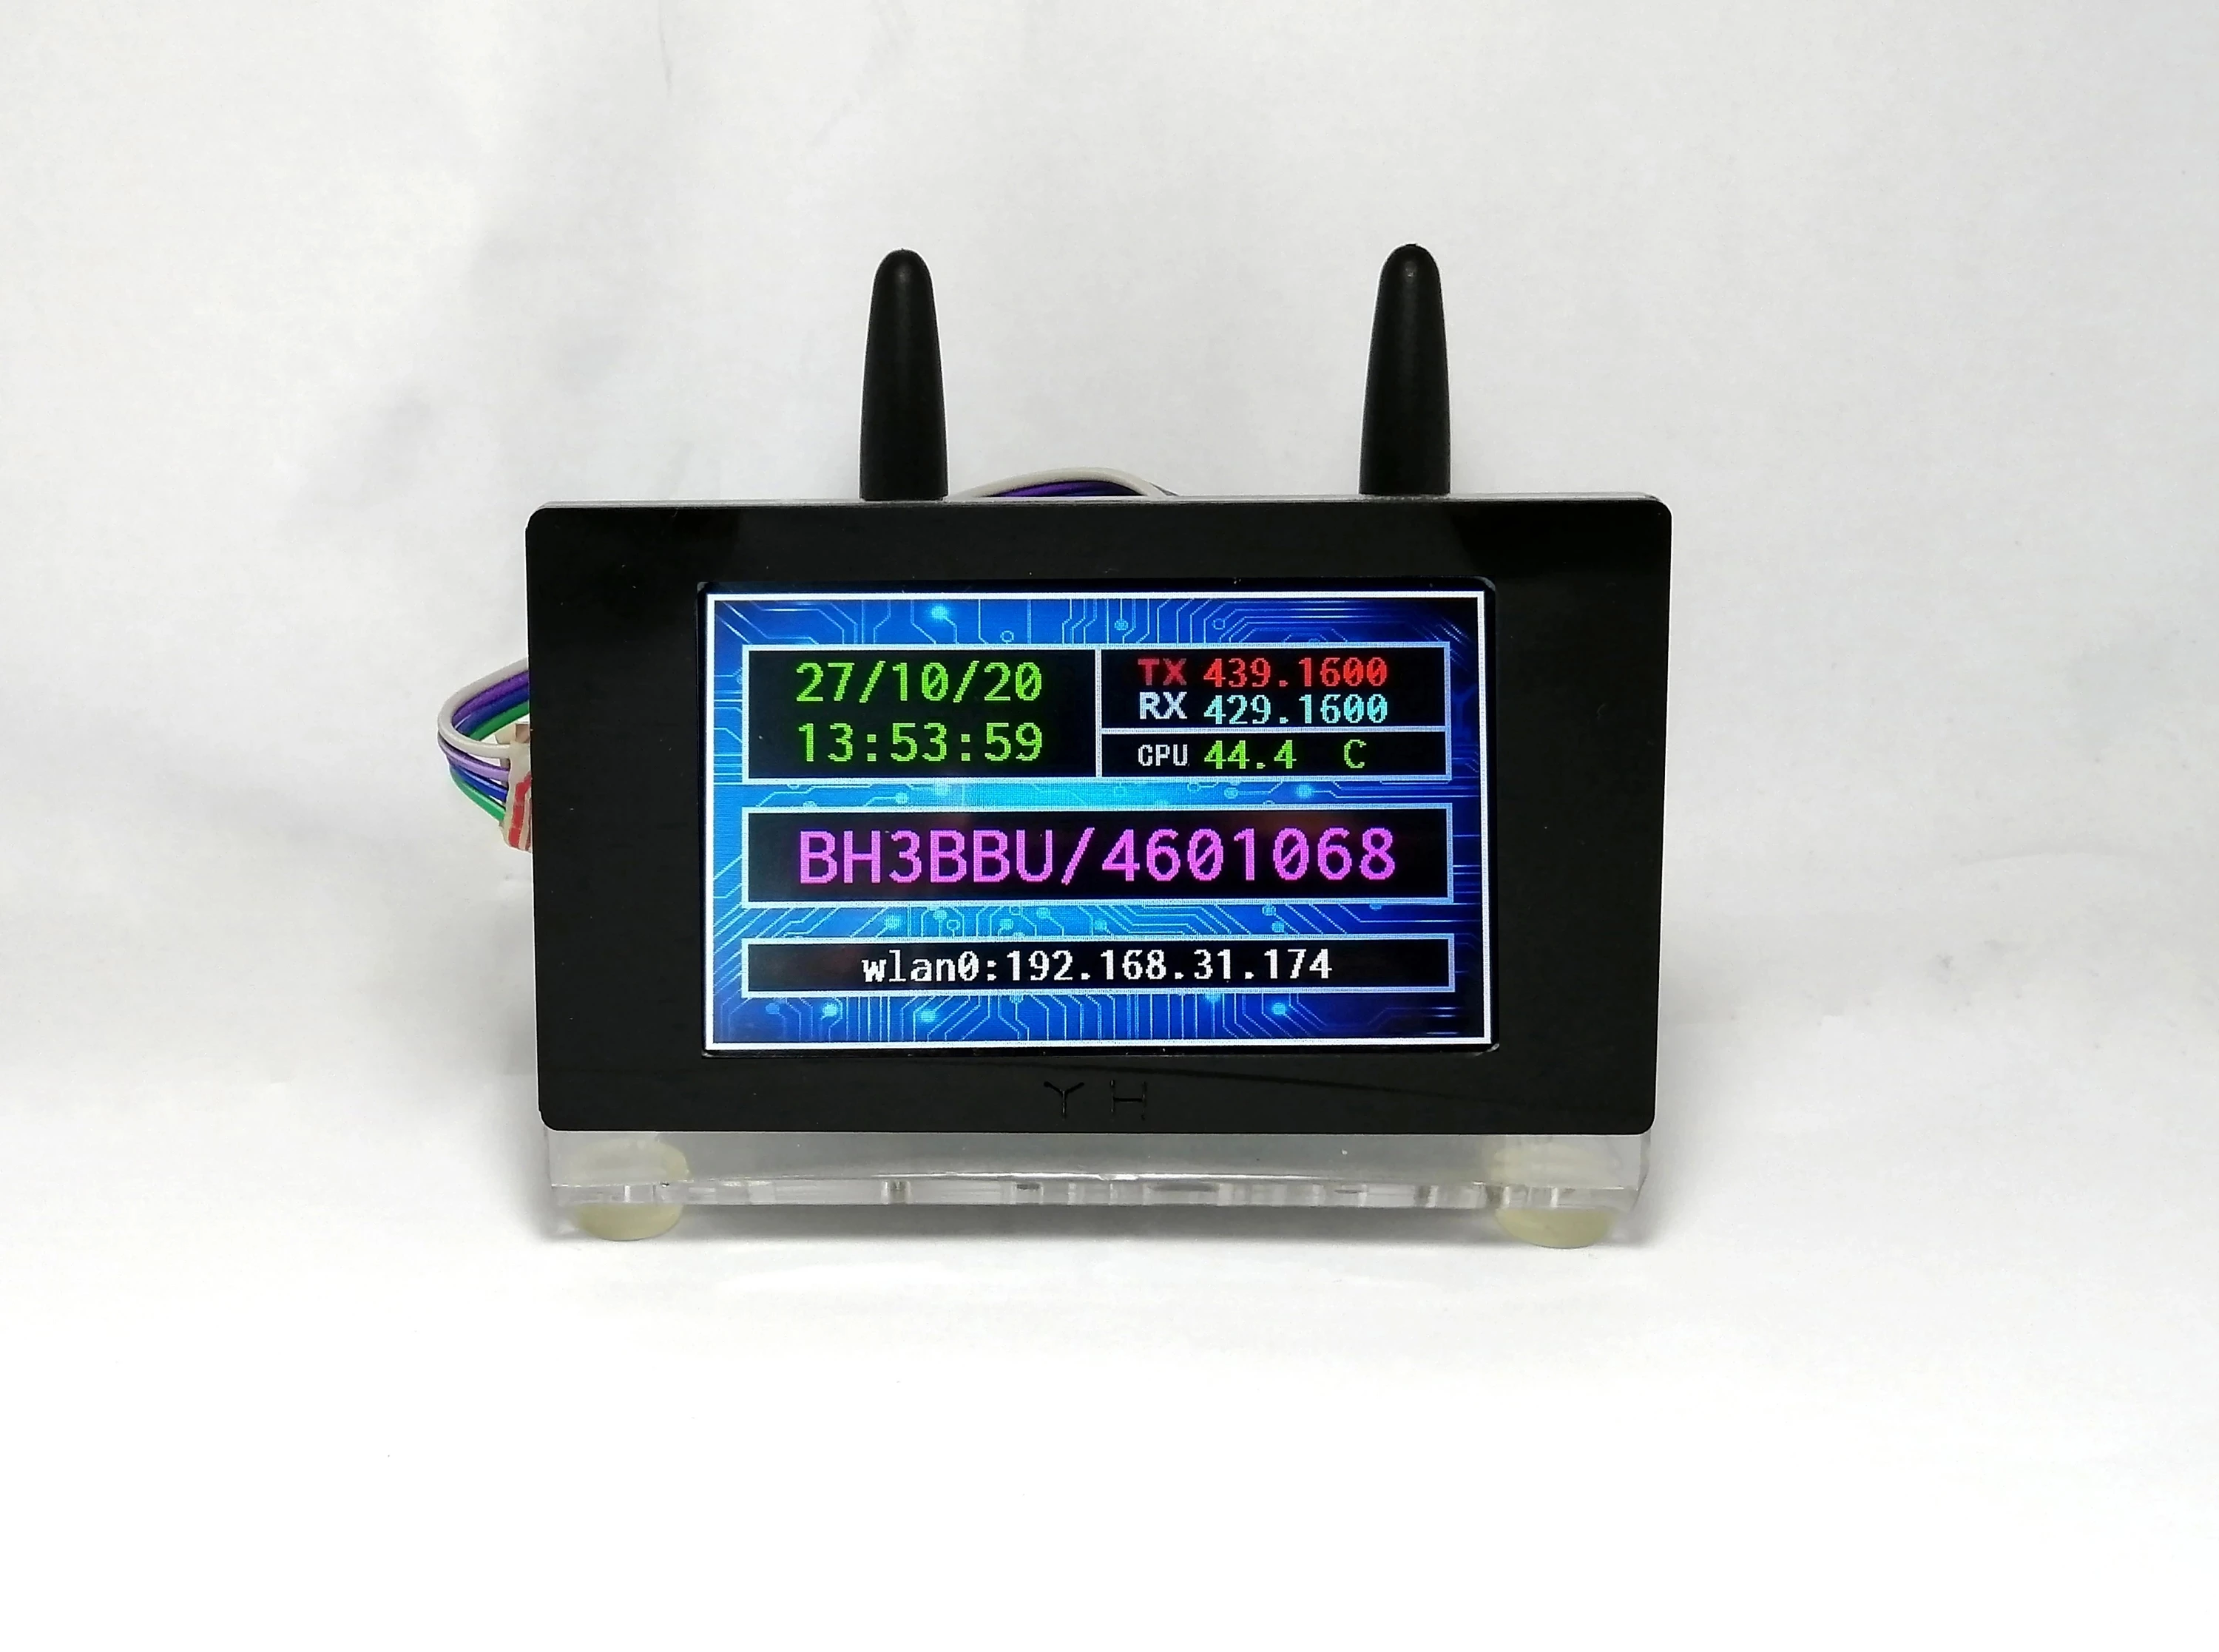 MMDVM Hotspot UHF-VHF + 3.5